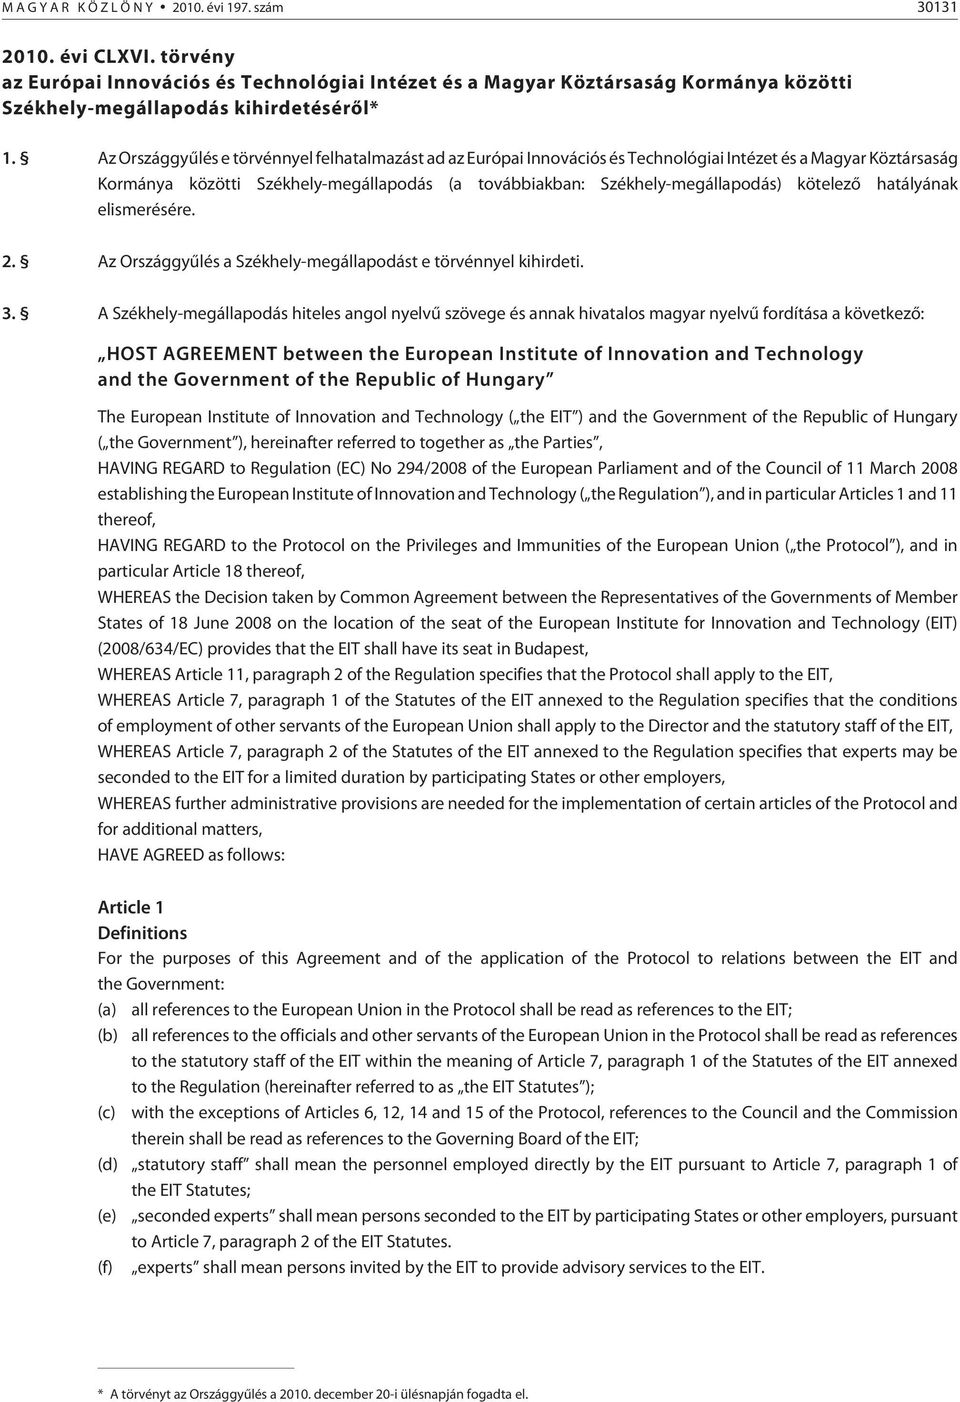 Az Országgyûlés e törvénnyel felhatalmazást ad az Európai Innovációs és Technológiai Intézet és a Magyar Köztársaság Kormánya közötti Székhely-megállapodás (a továbbiakban: Székhely-megállapodás)